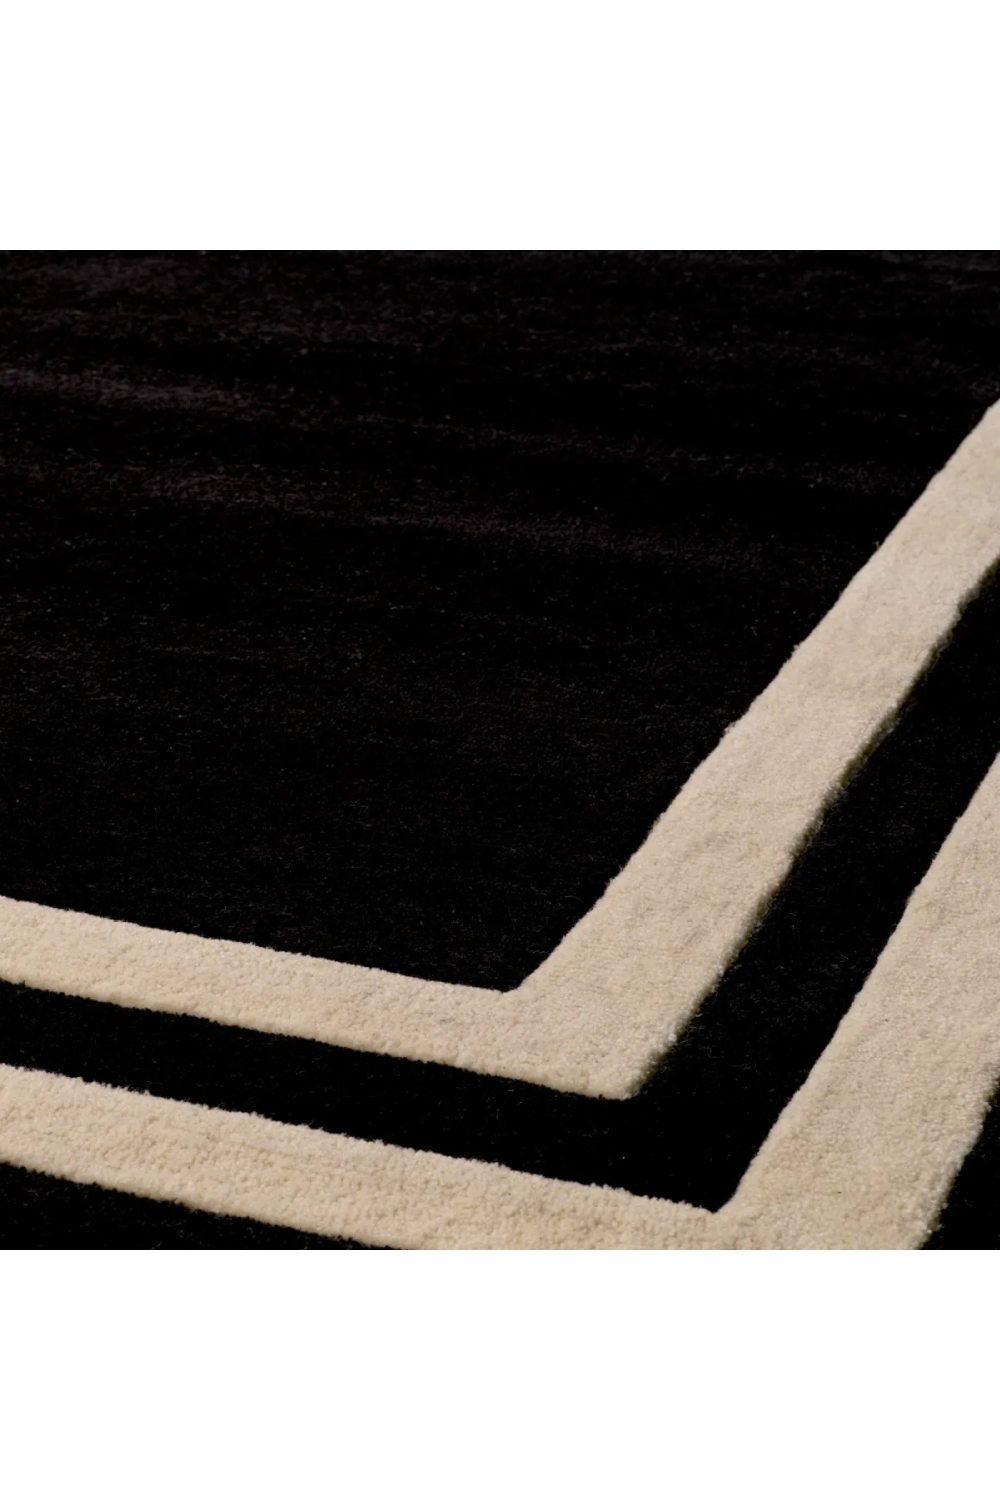 Black Carpet | Eichholtz Celeste - (10x13) | Oroa.com